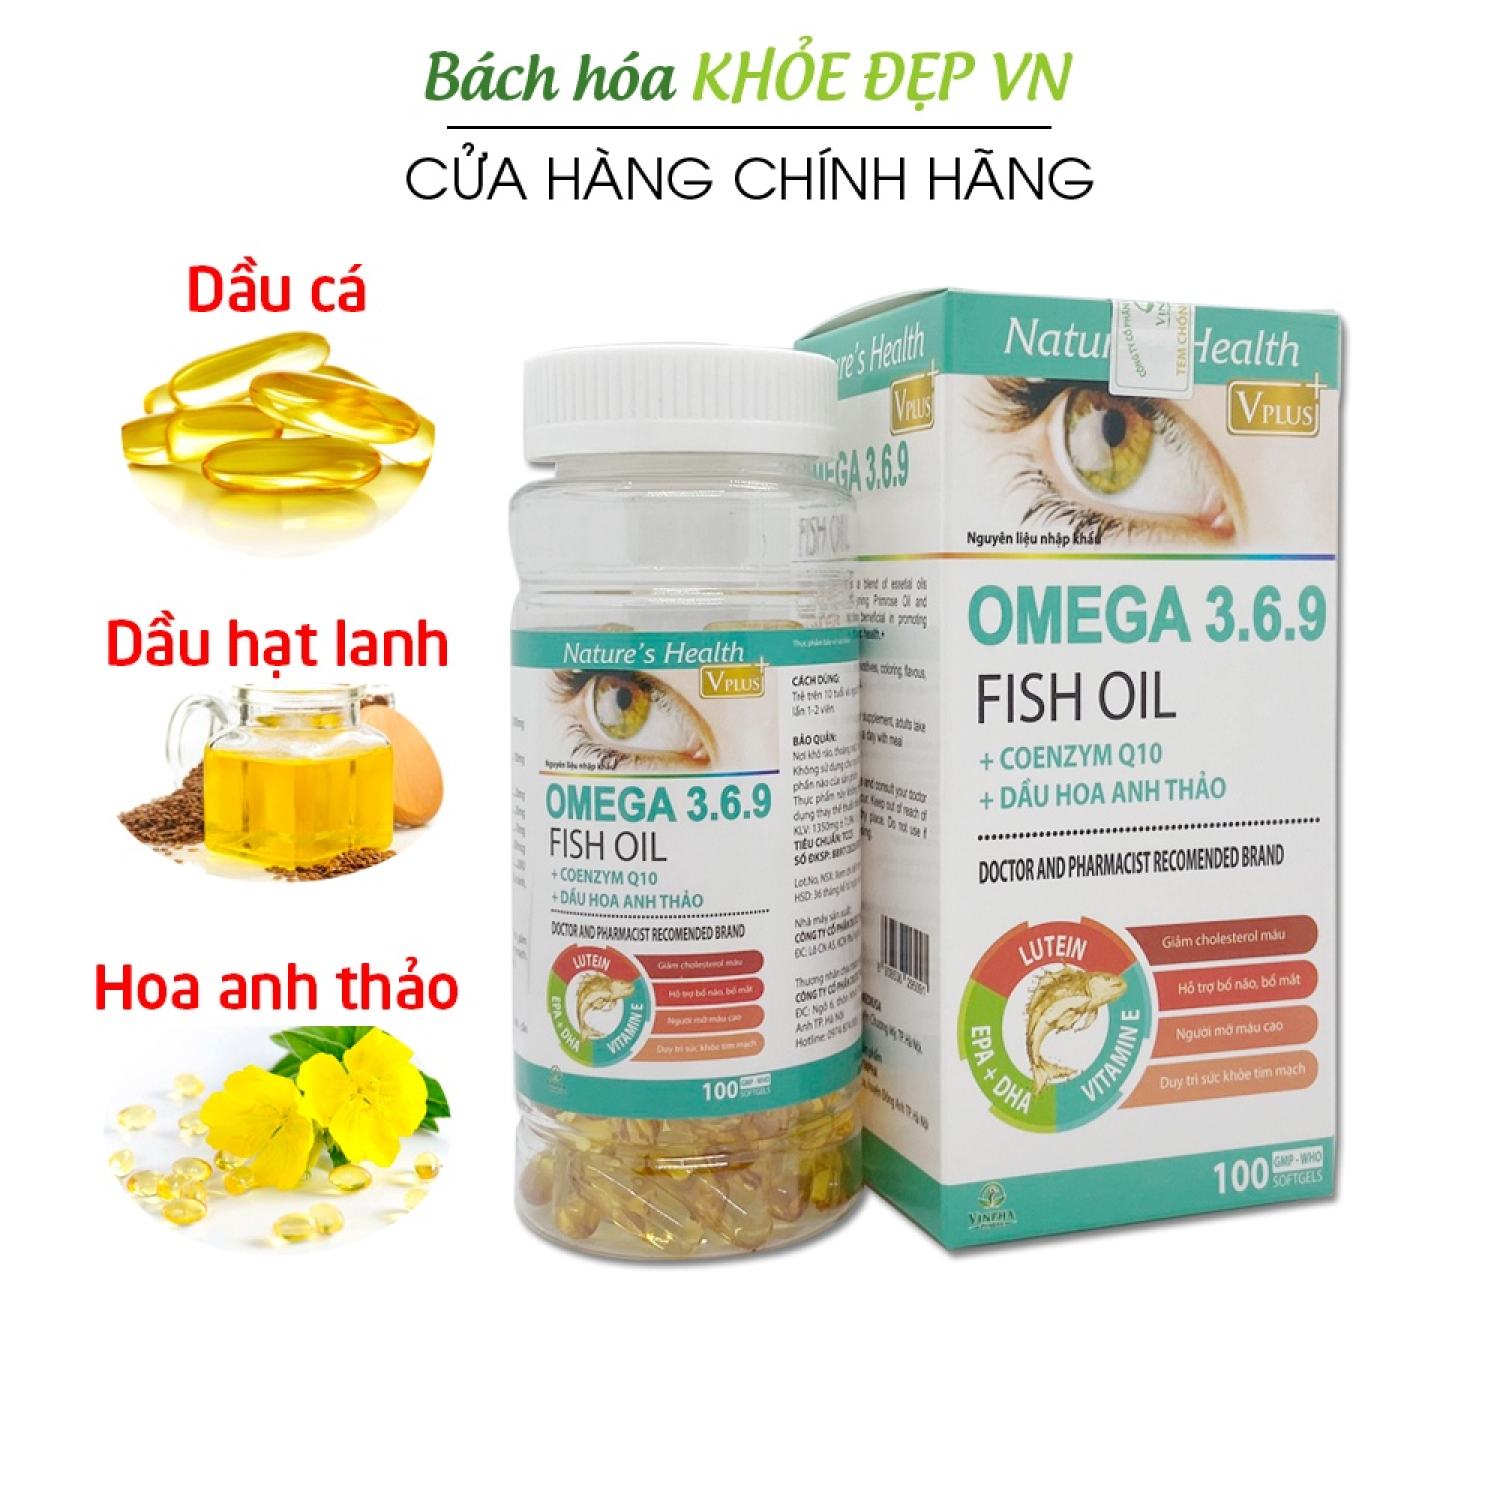 Viên dầu cá Omega 3 6 9 Dầu hạt lanh, dầu gấc, hoa anh thảo - 100 viên